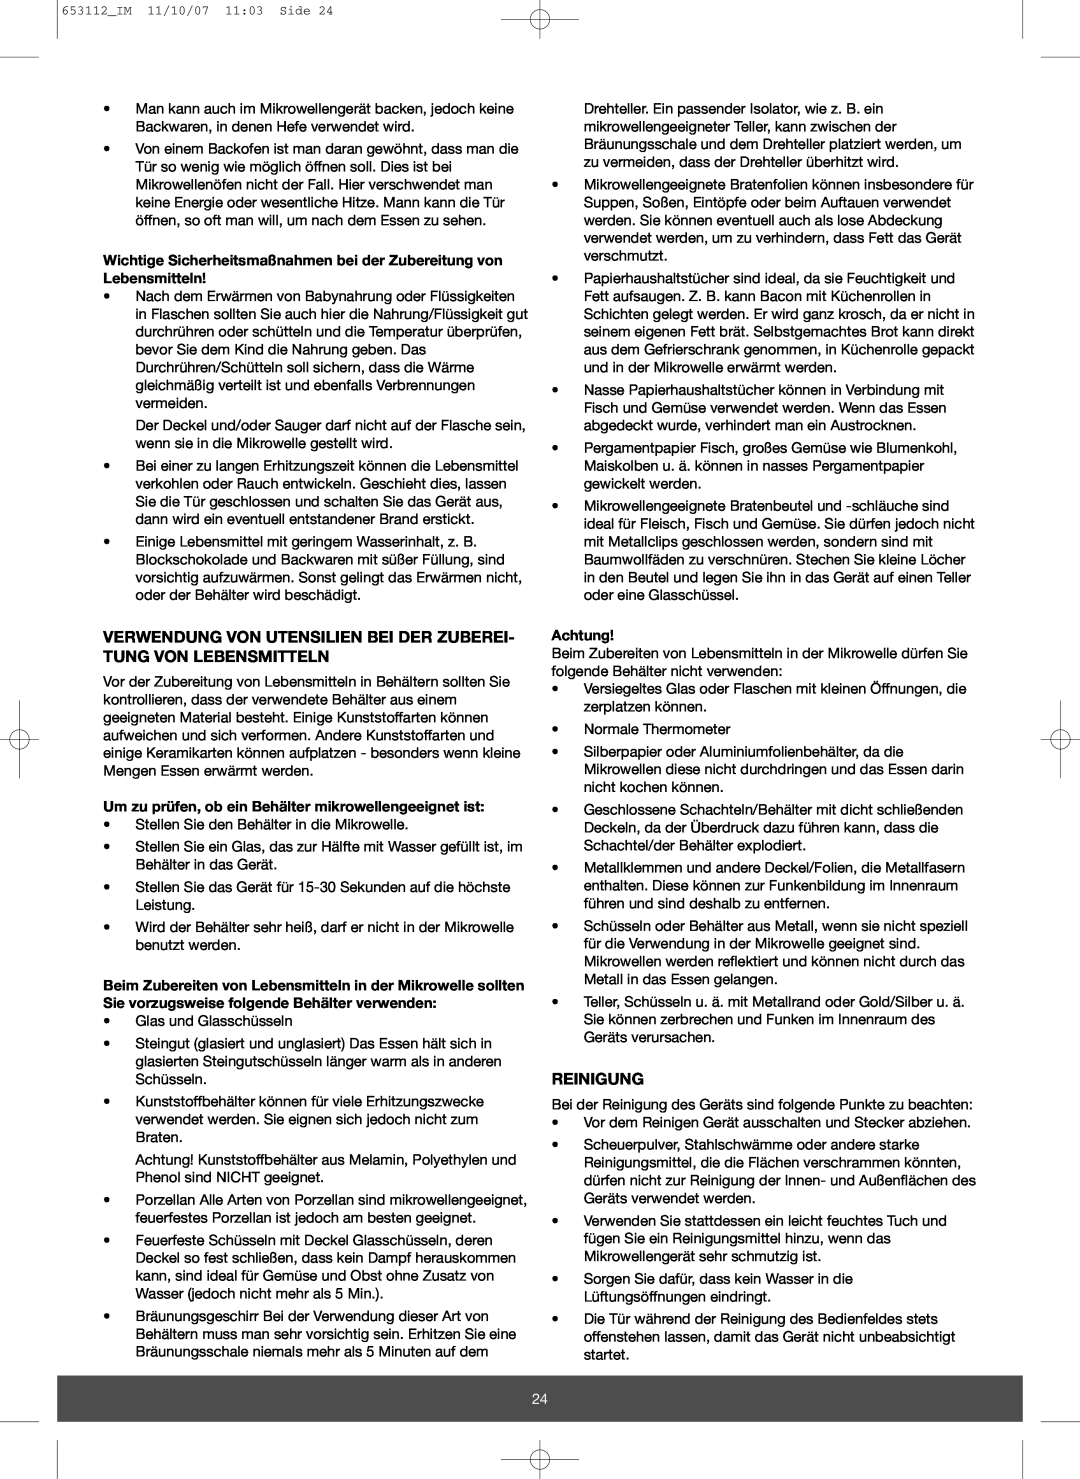 Melissa 653-115 manual Verwendung Von Utensilien Bei Der Zuberei- Tung Von Lebensmitteln, Reinigung, Achtung 